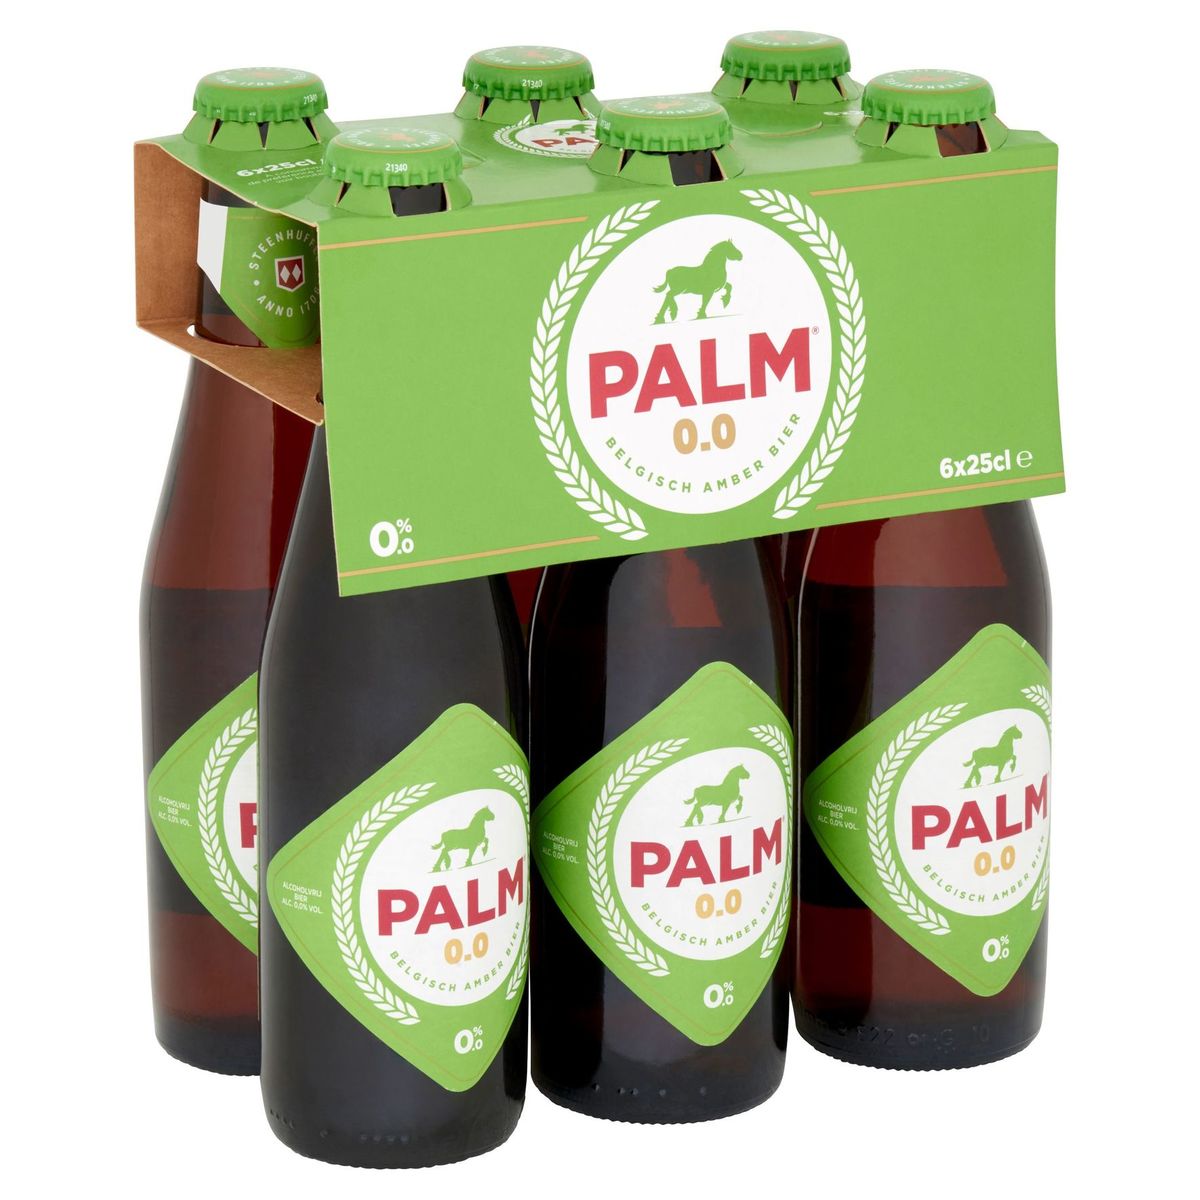 Palm 0.0 Belgisch Amber Bier Flessen 6 x 25 cl